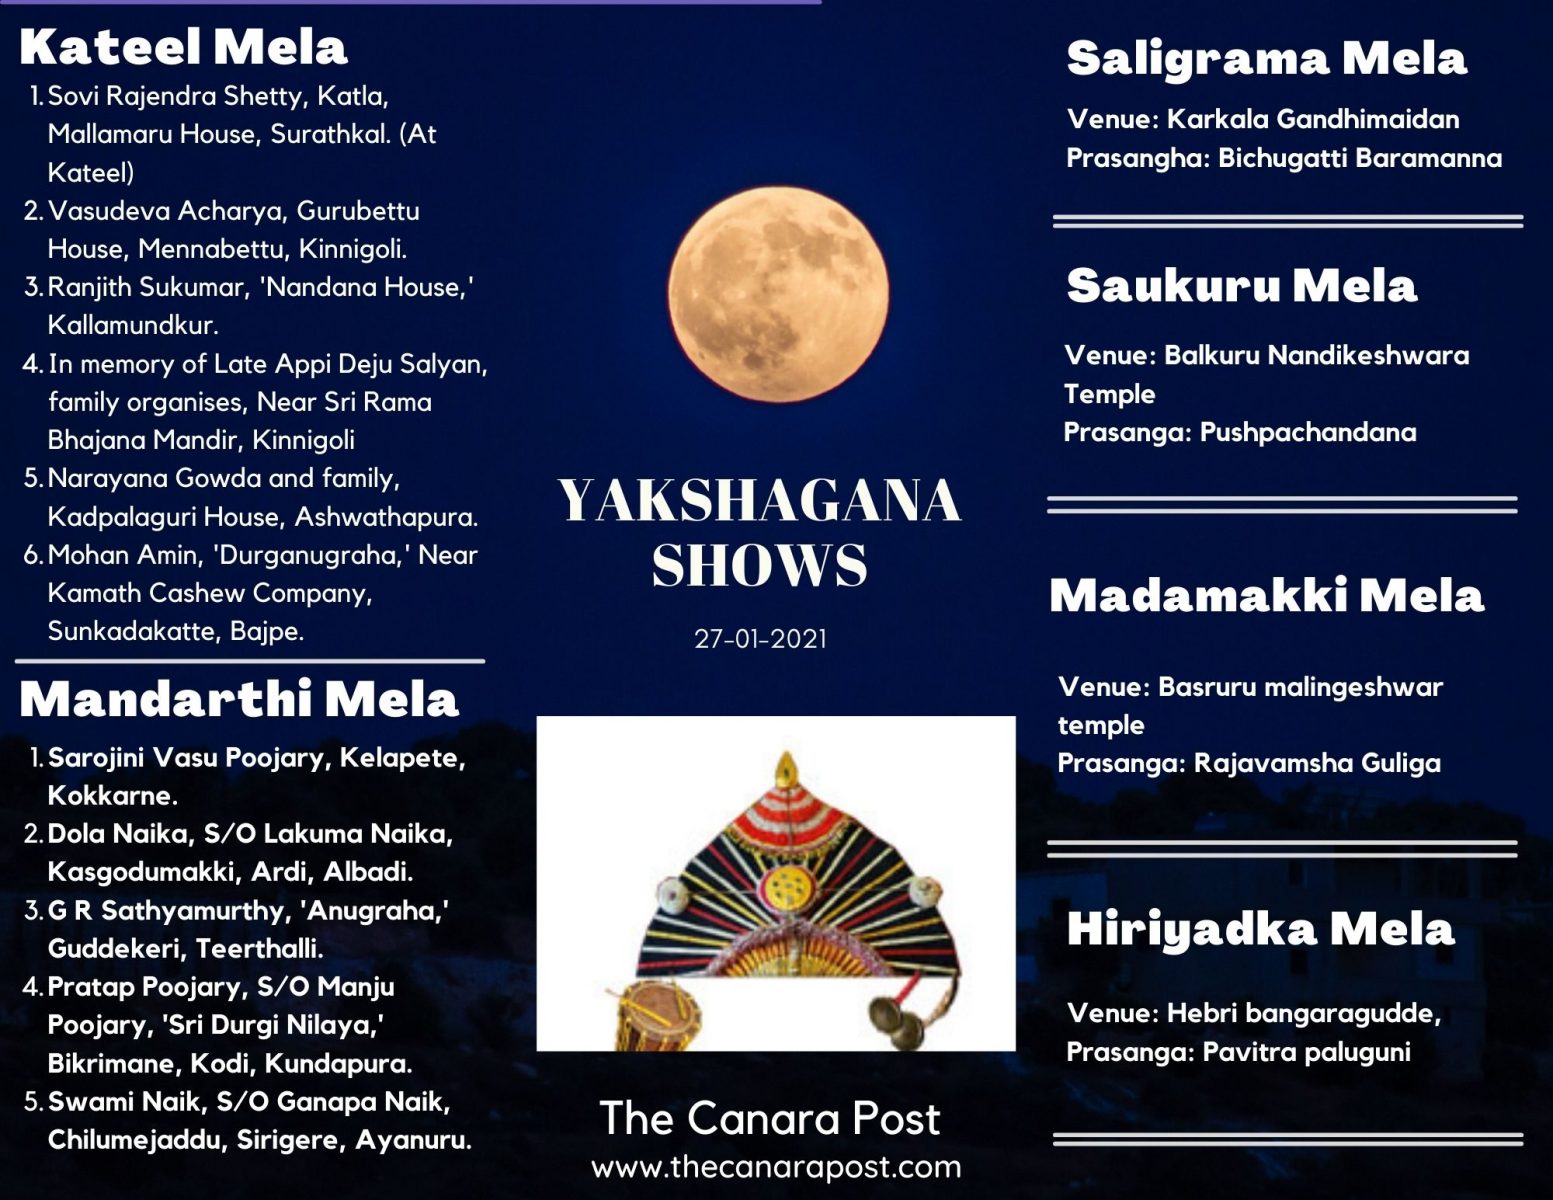 Yakshagana shows